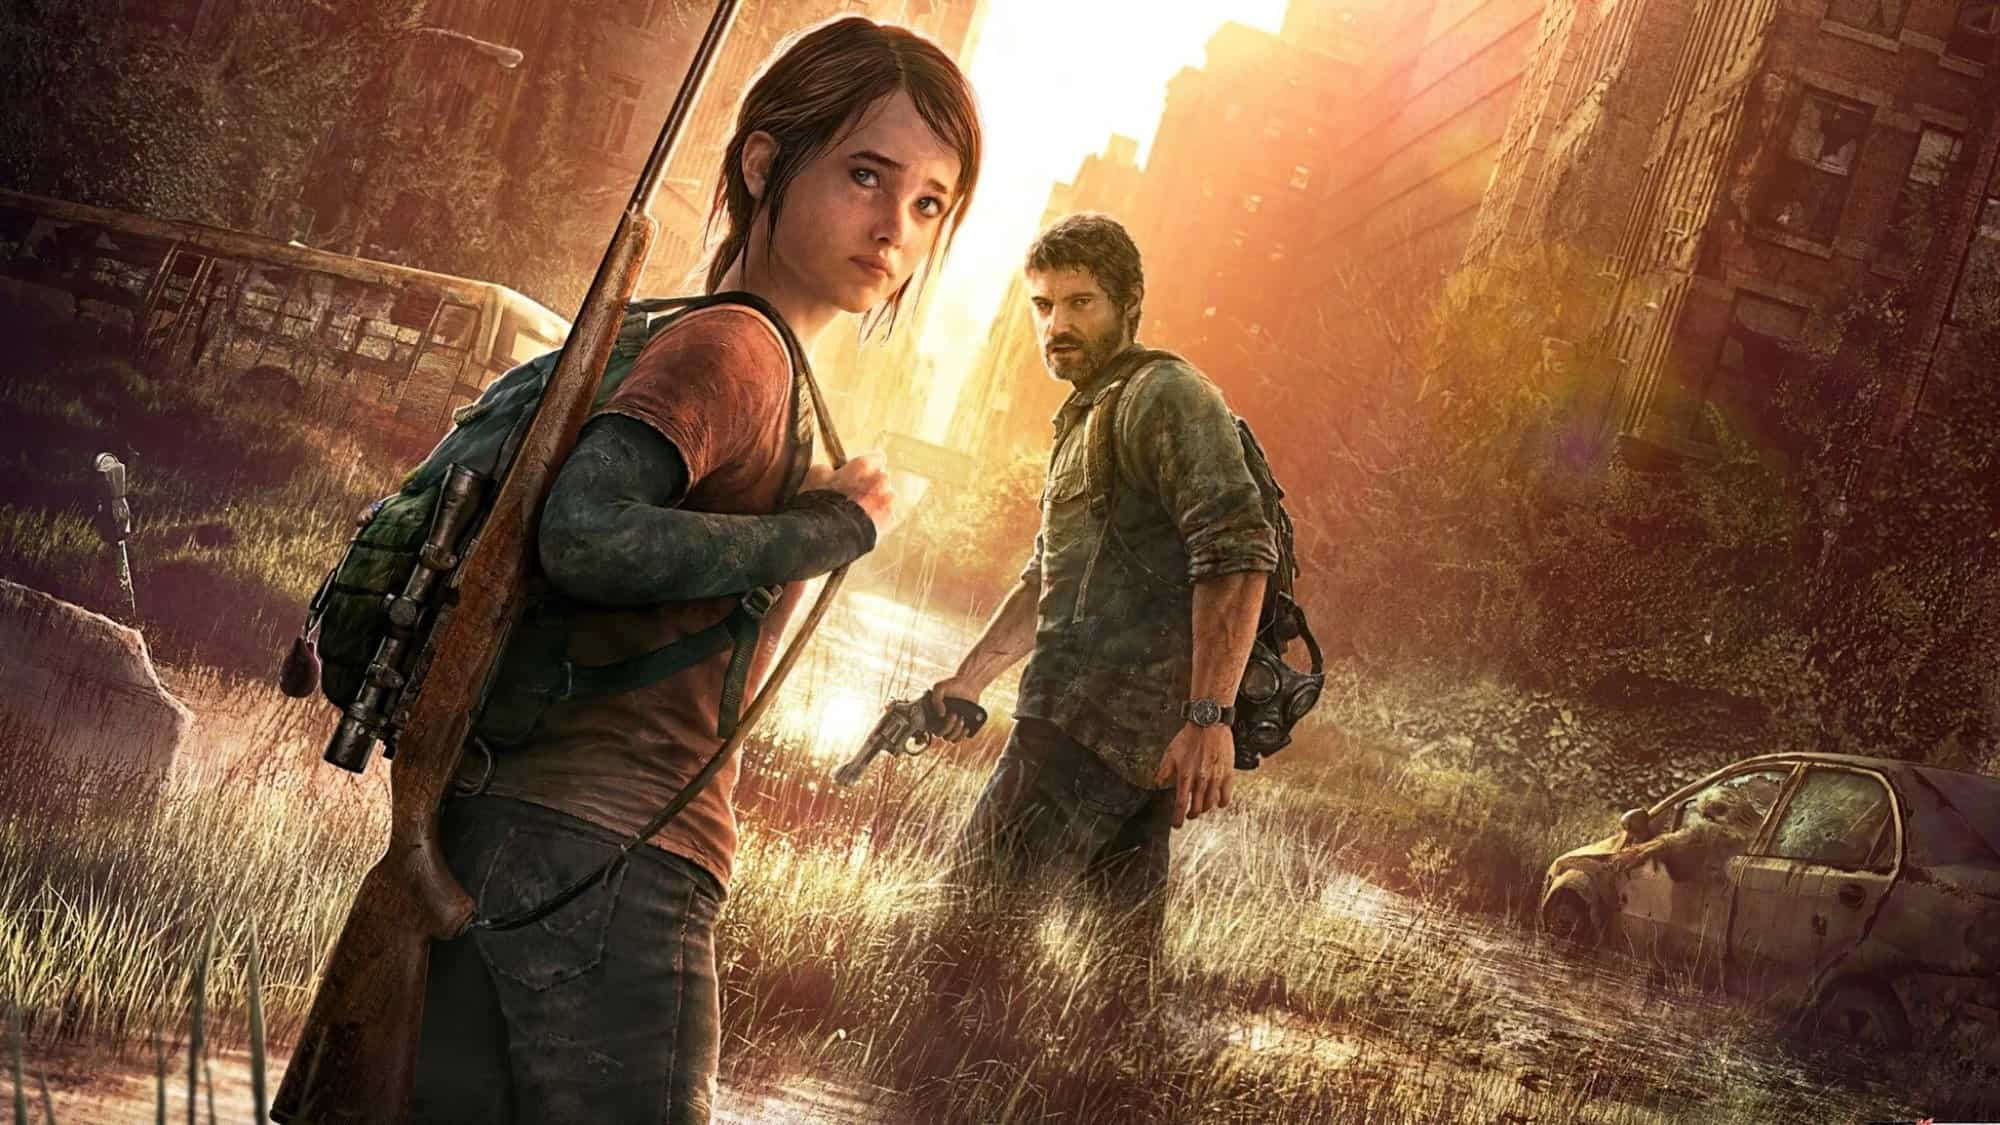 Série de The Last of Us estabelece fidelidade ao jogo em primeiro